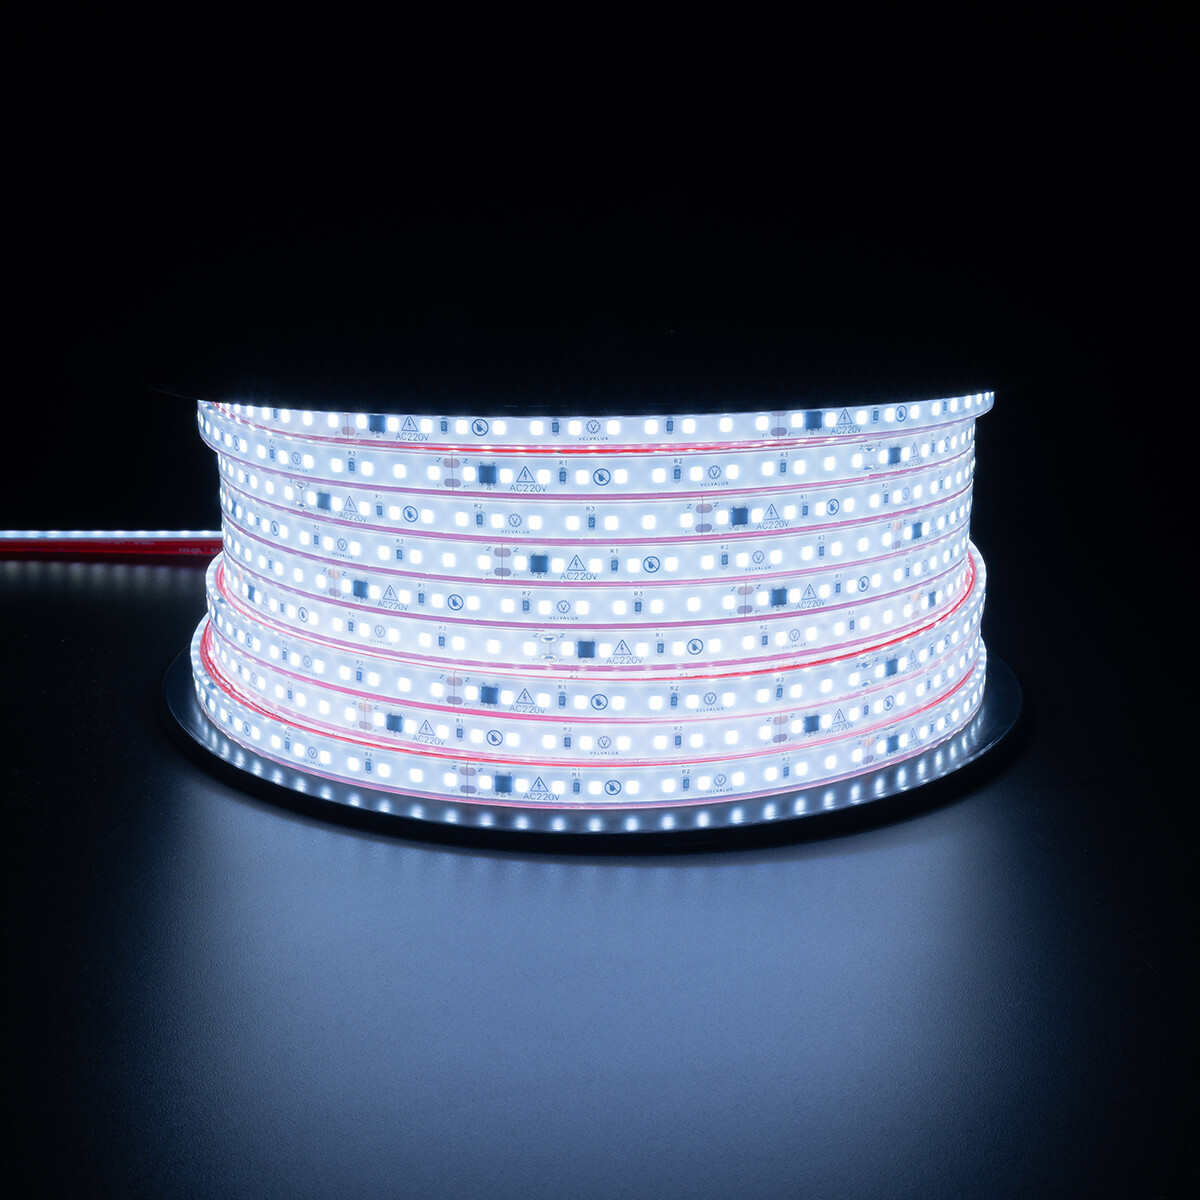 Velvalux LED Strip -  - 50 Meter - Helder.Koud Wit 6000K - Dimbaar - Waterdicht IP67 - 96000 Lumen - 6000 LEDs - Directe Aansluiting op Netstroom - Werkt zonder Driver